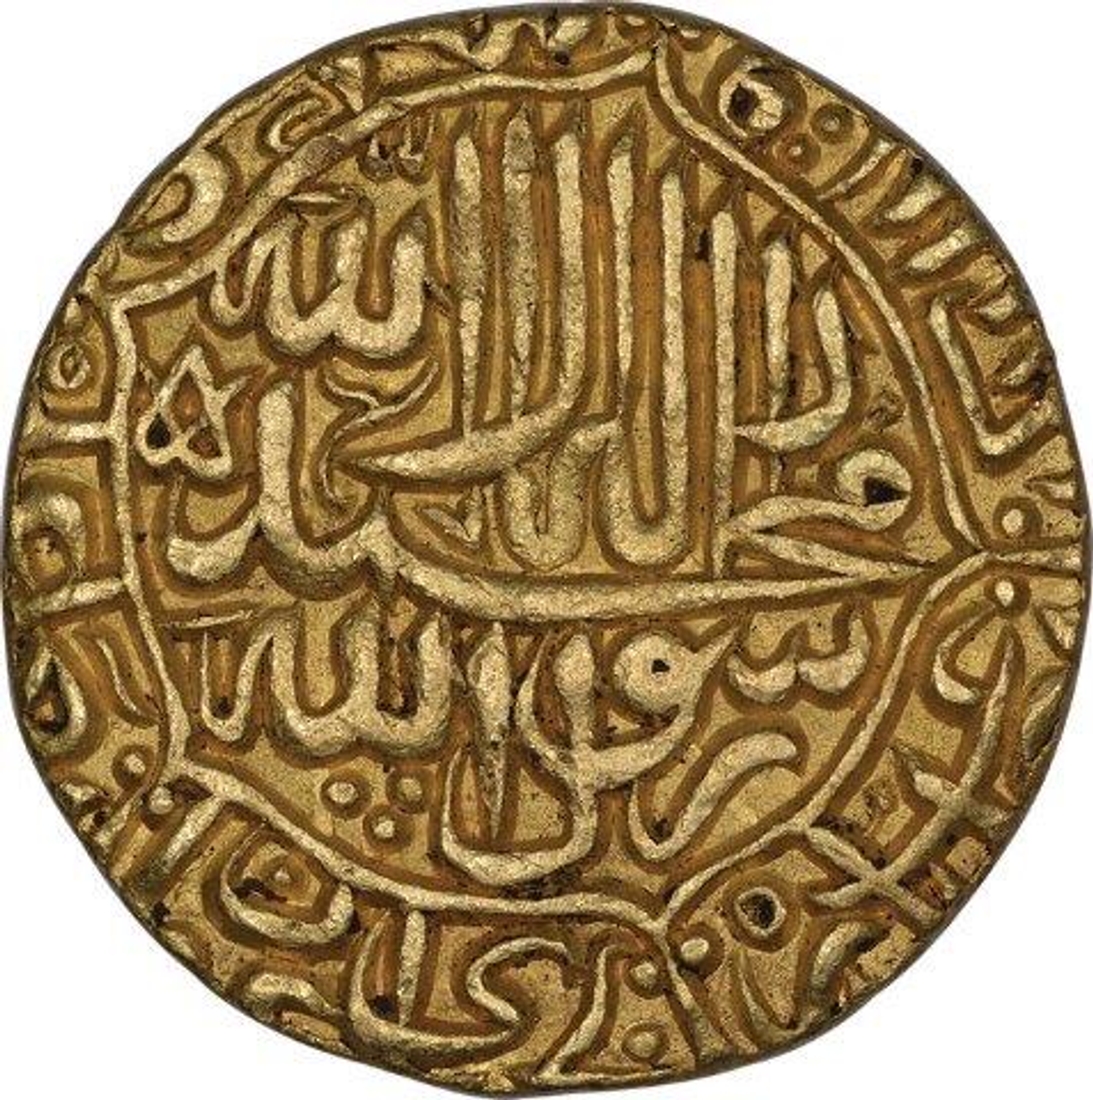 Rare Gold Mohur of Akbar of Jaunpur mint.